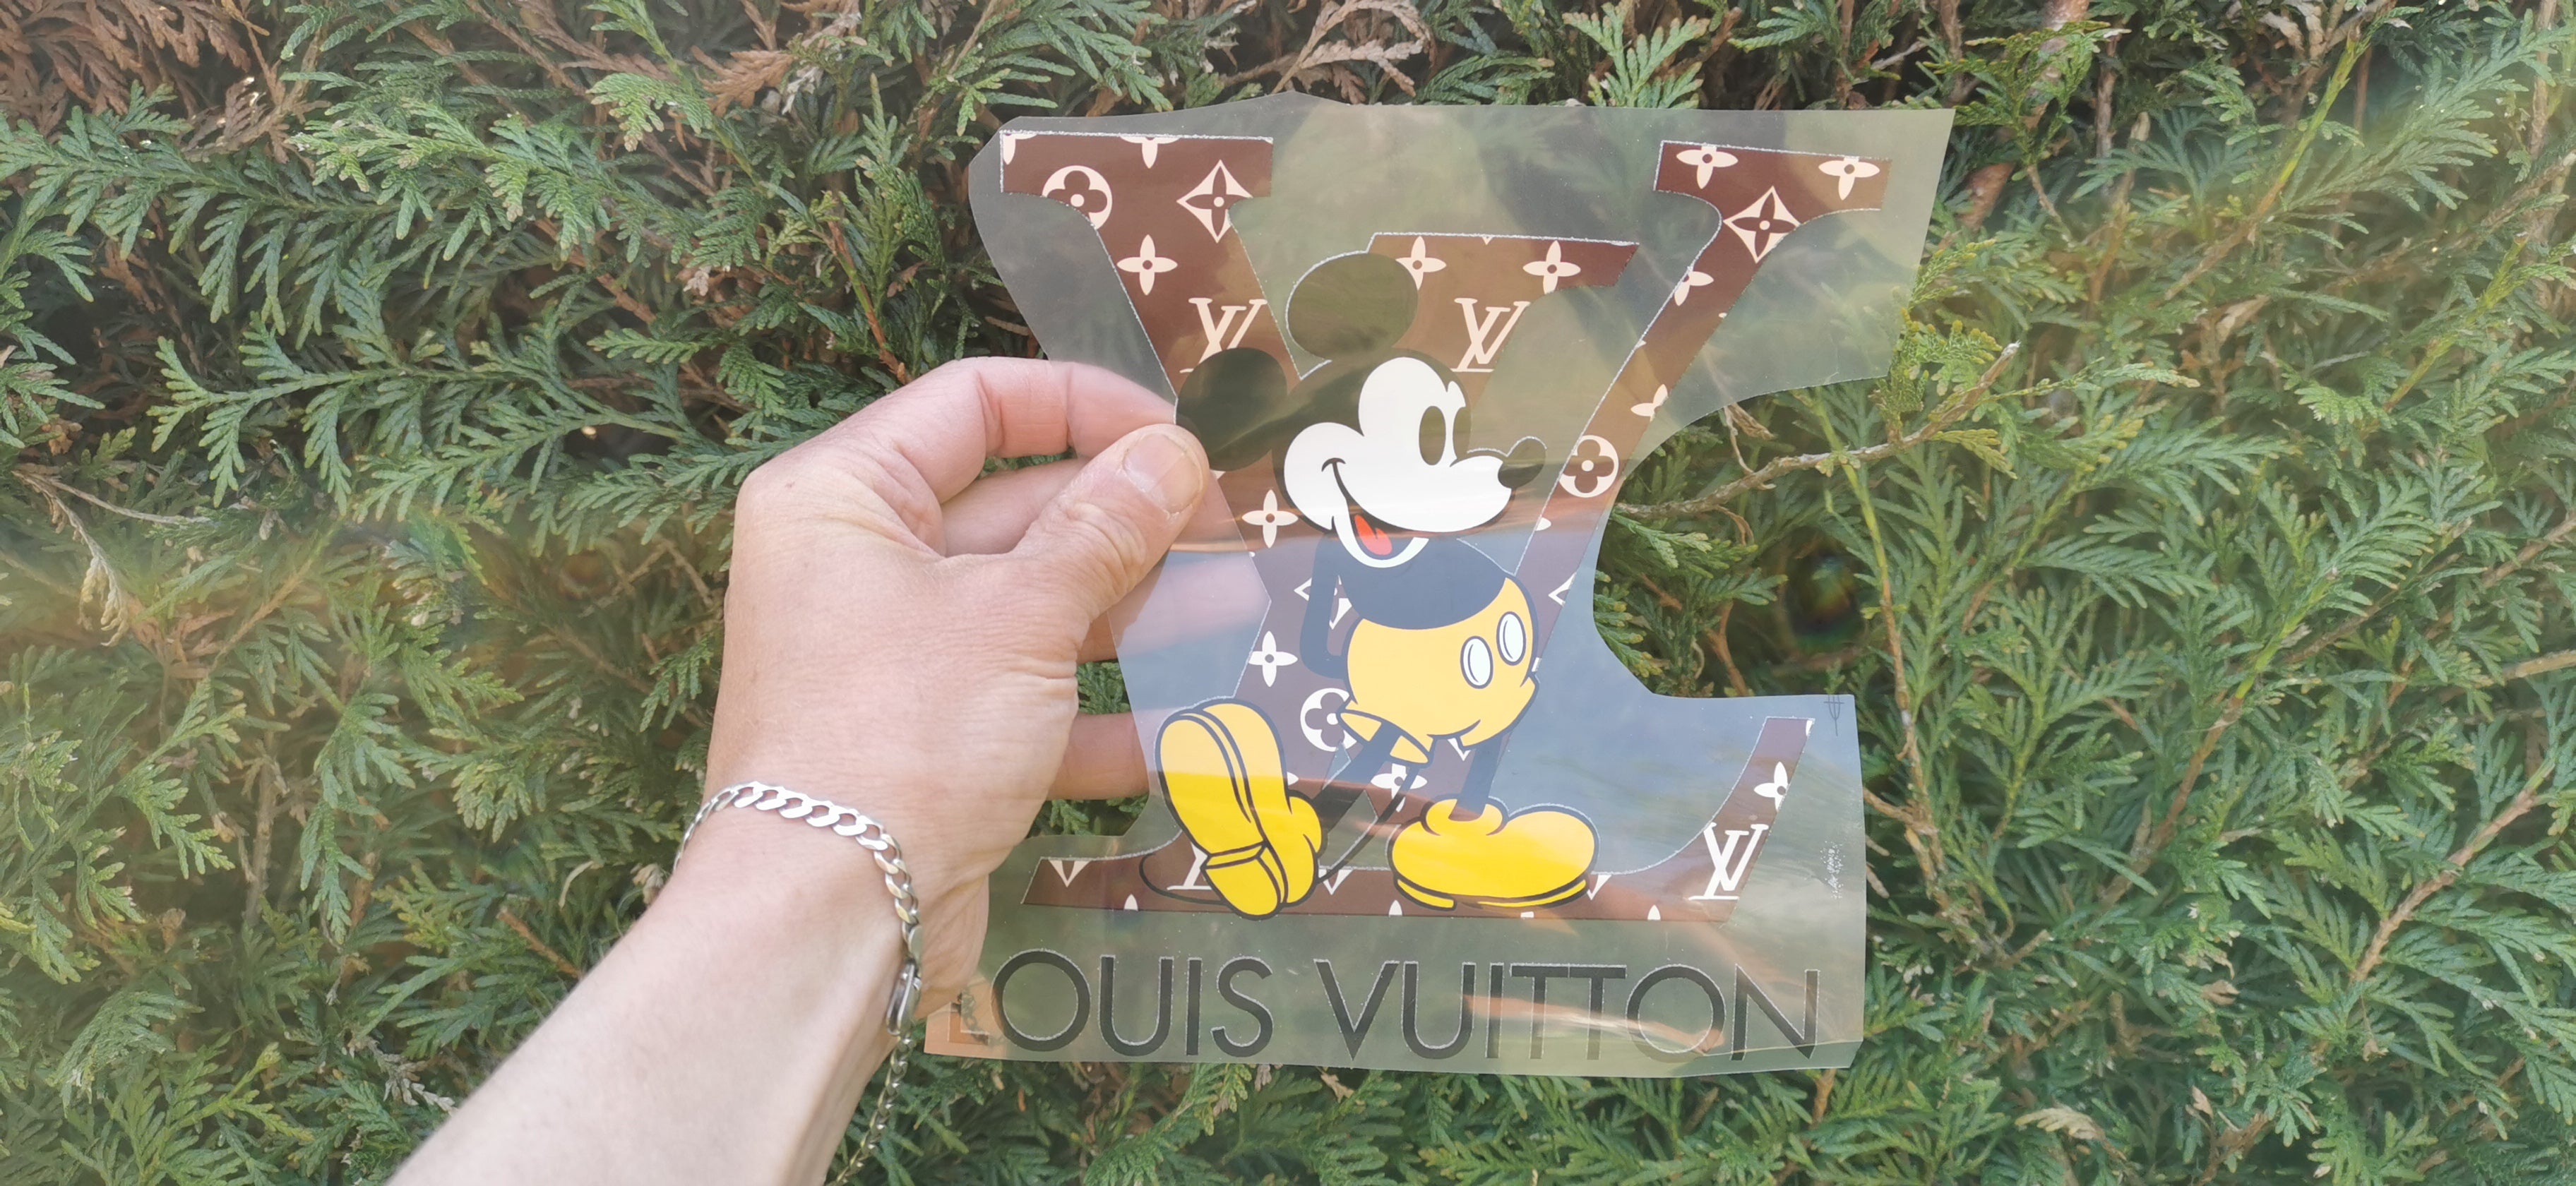 Mickey Mouse Louis Vuitton Logo